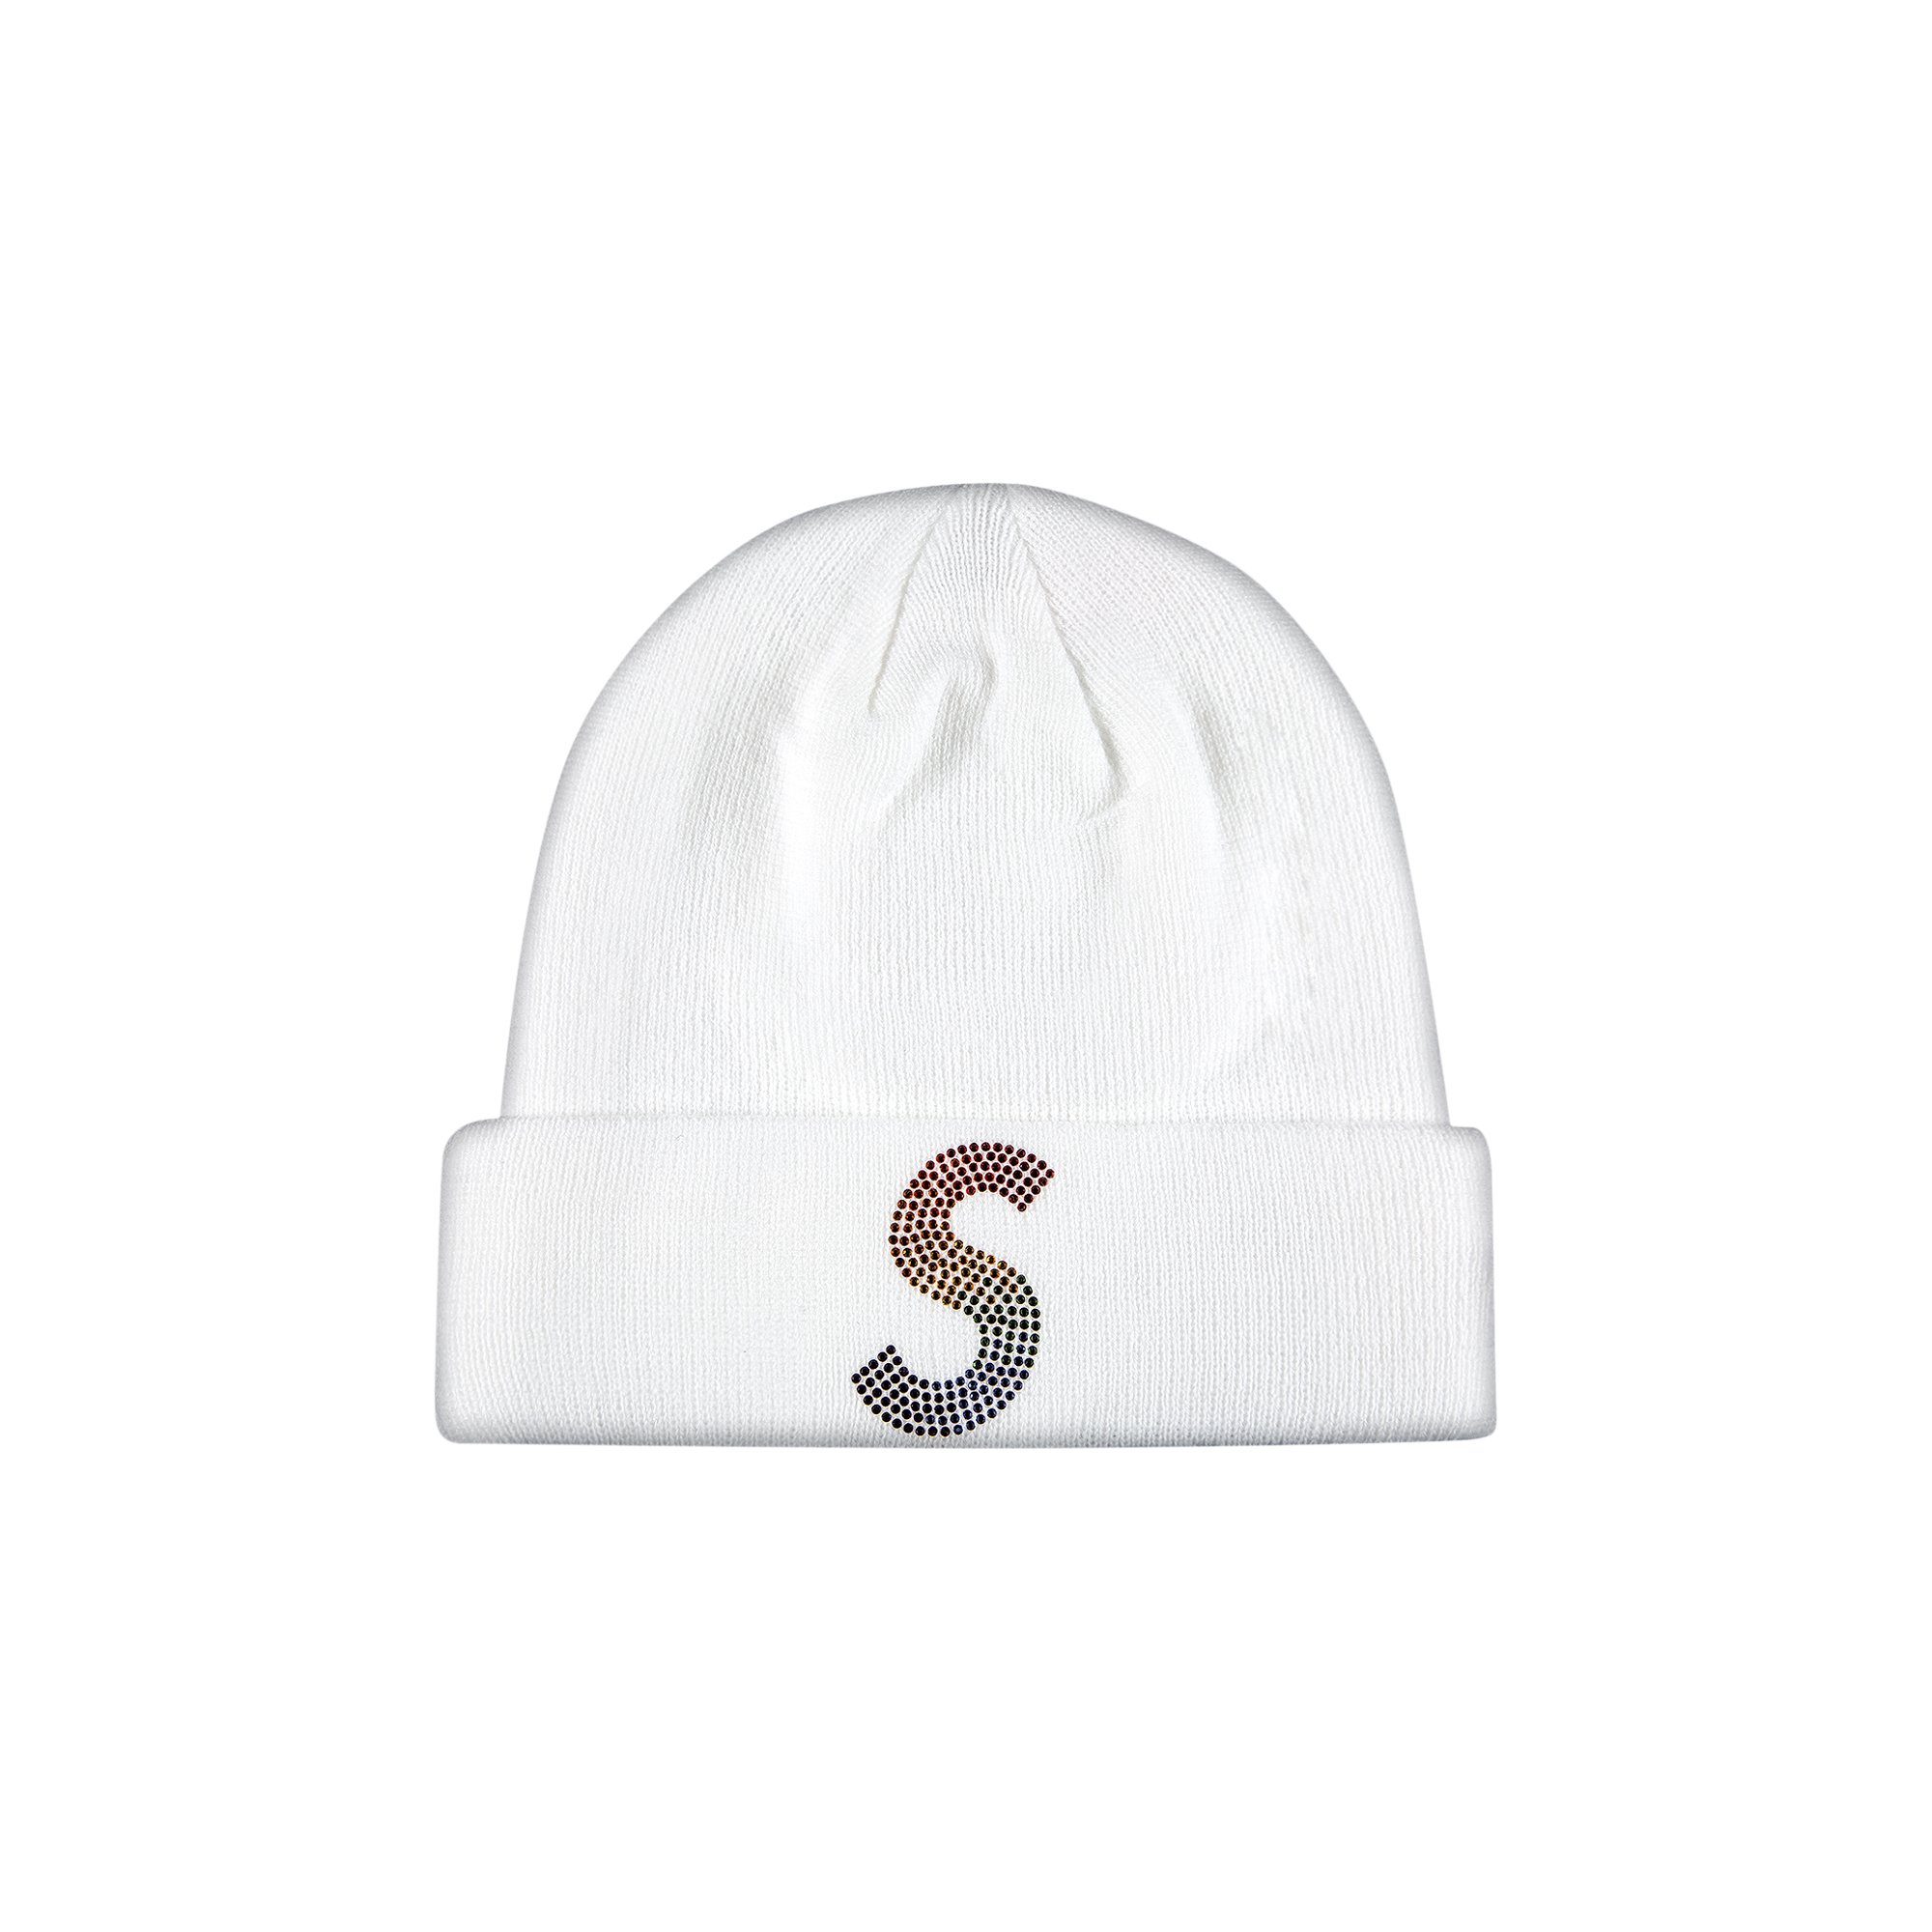 Buy Supreme x New Era x Swarovski S Logo Beanie 'White' - SS21BN5 ...